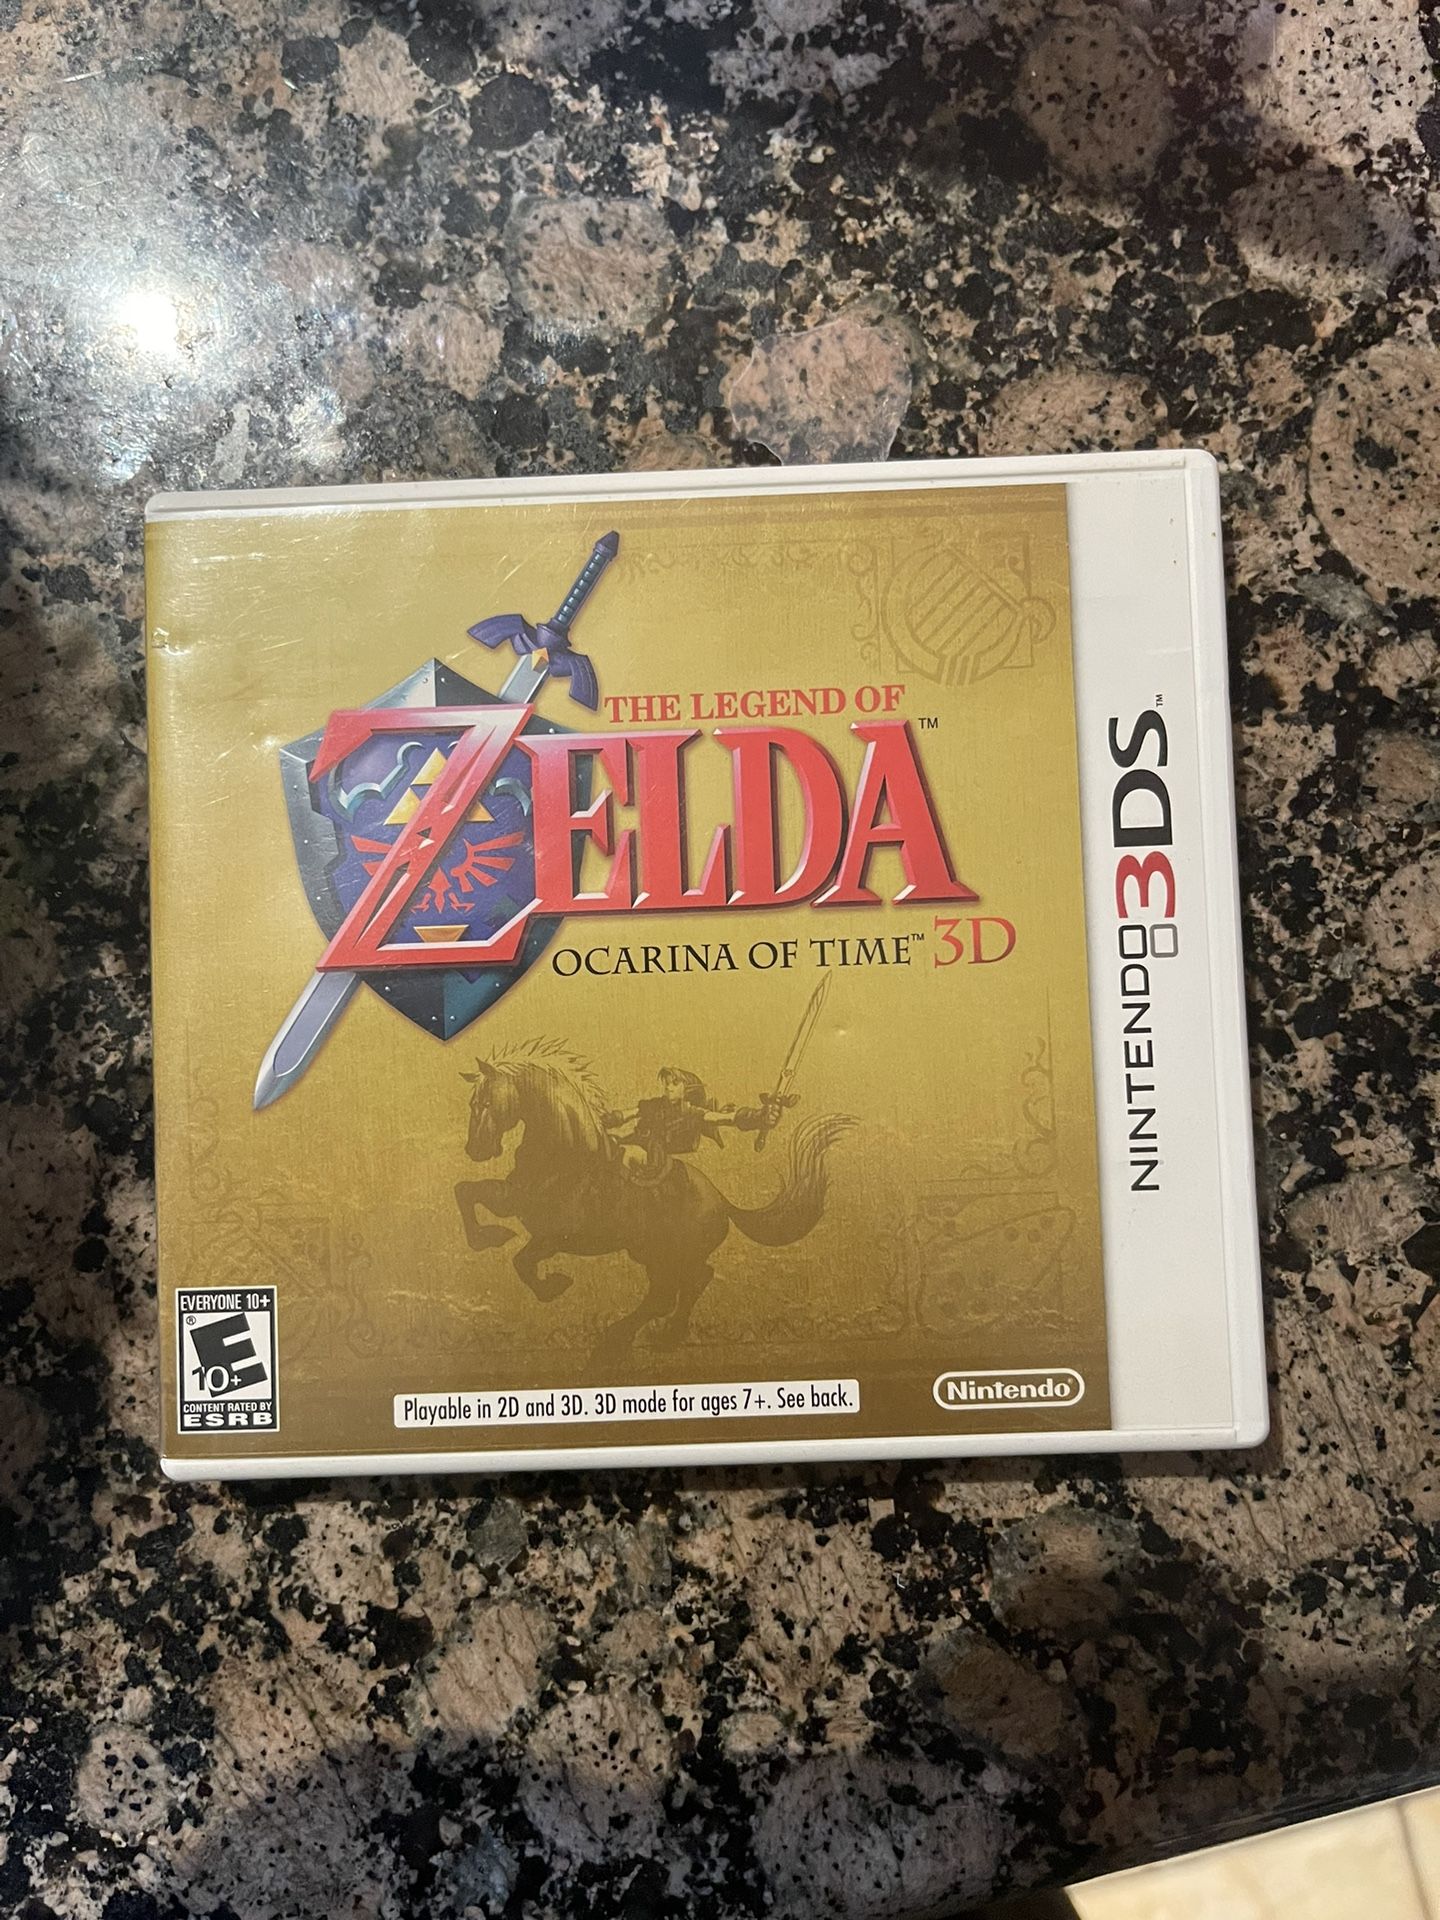 Zelda Nintendo 3ds